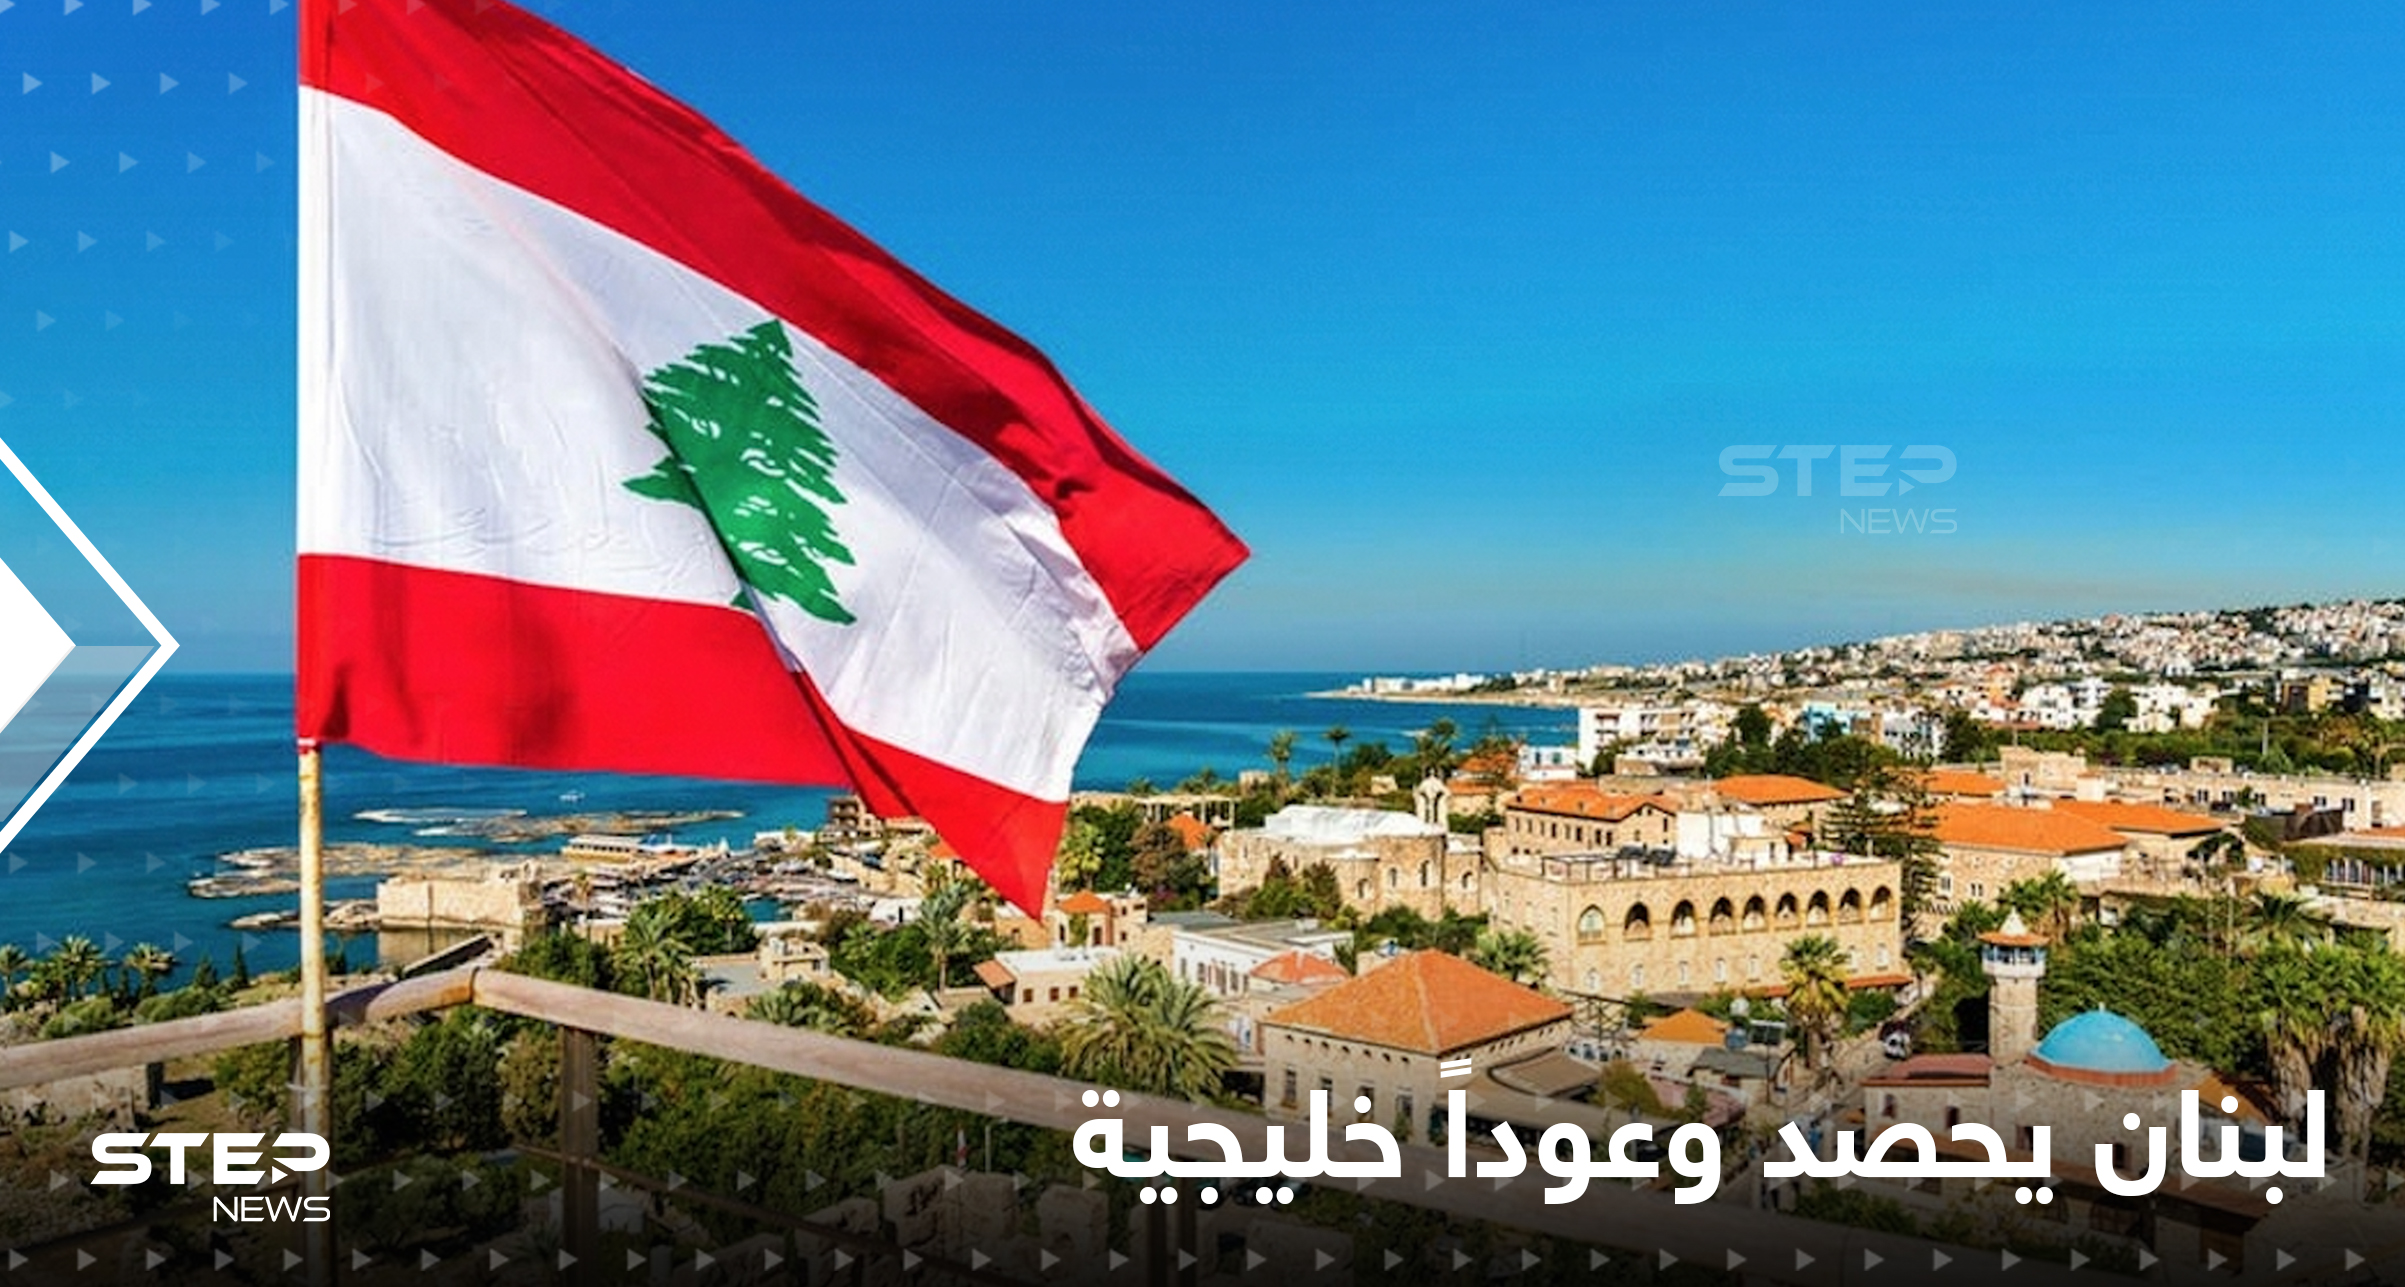 وعود من دول خليجية على رأسها الكويت لإنقاذ لبنان المفلس اقتصادياً